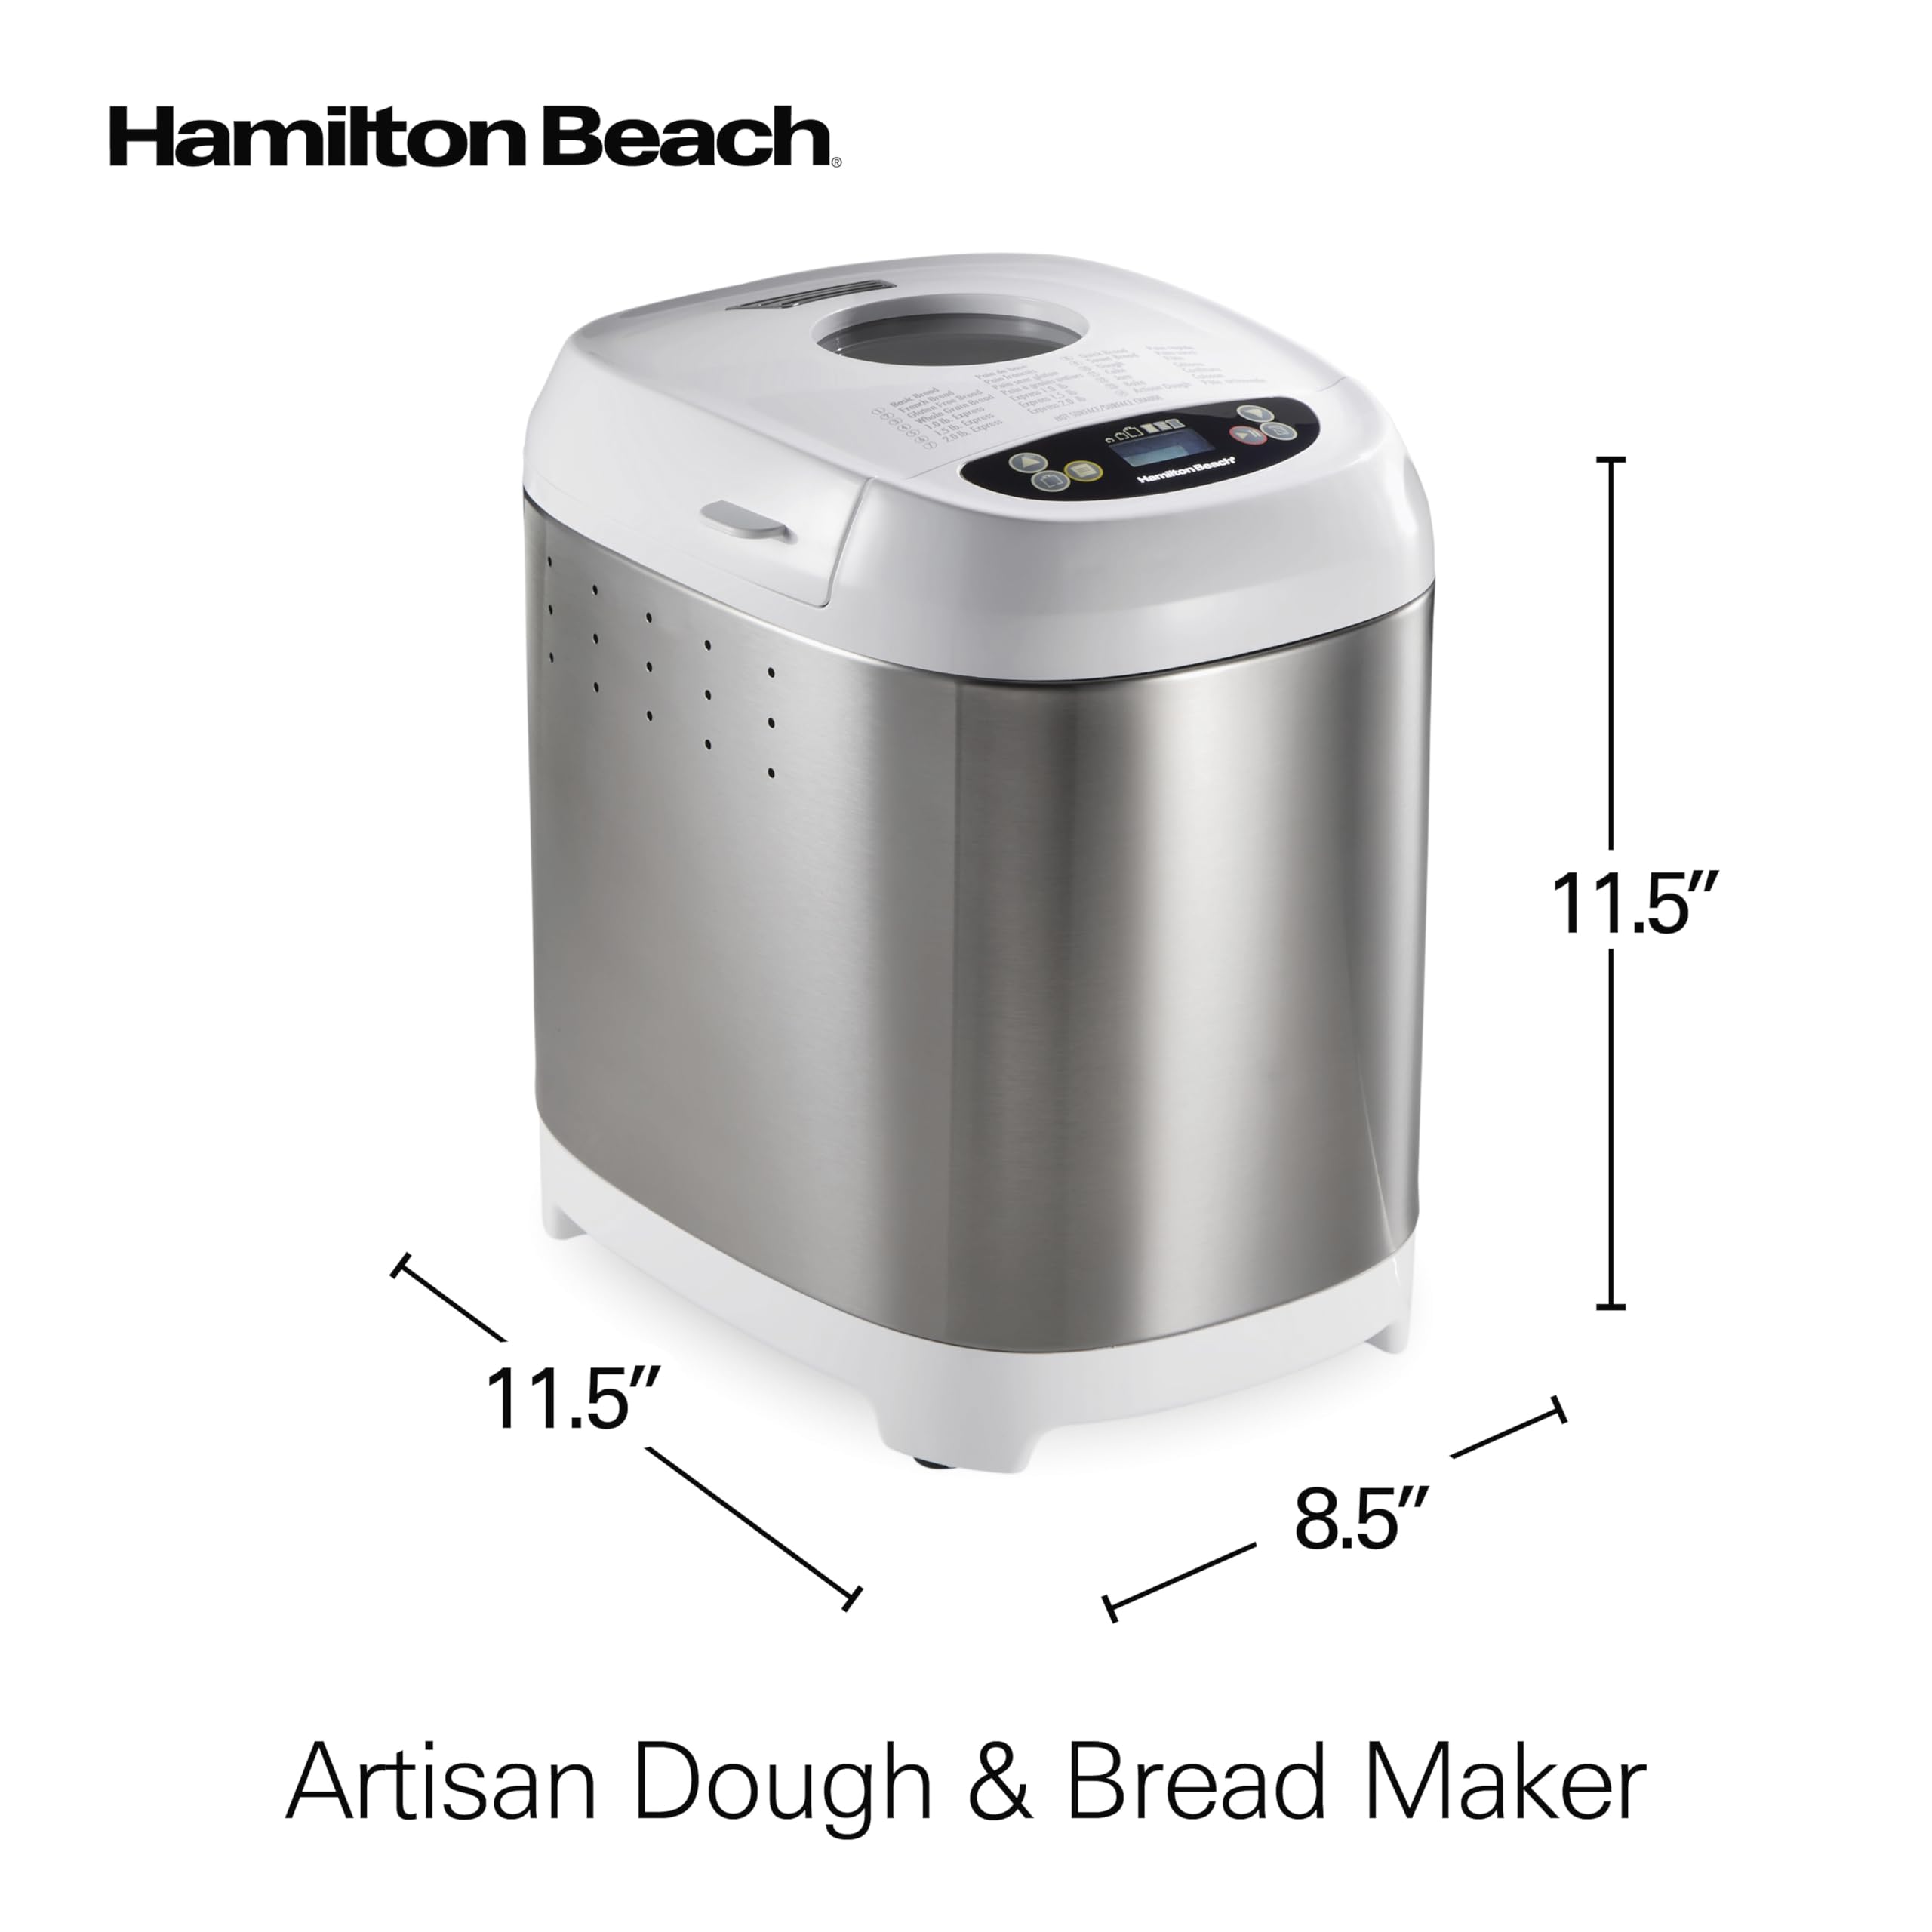 Hamilton Beach® Artisan Dough & Bread Maker